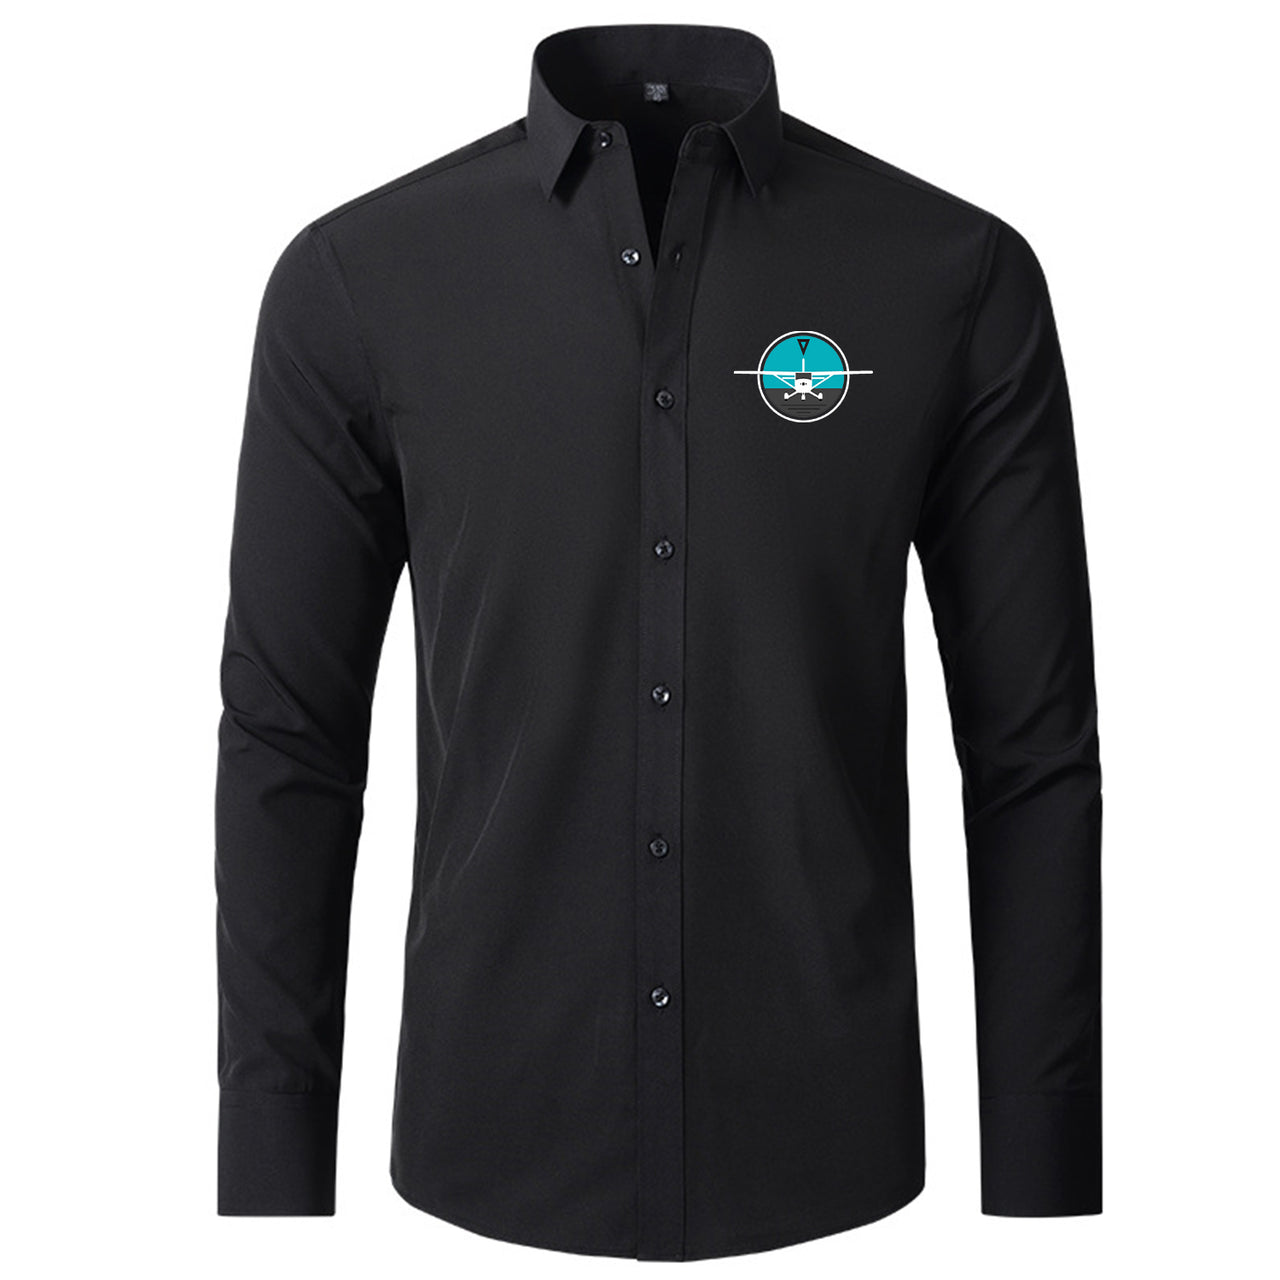 Cessna & Gyro Designed Long Sleeve Shirts